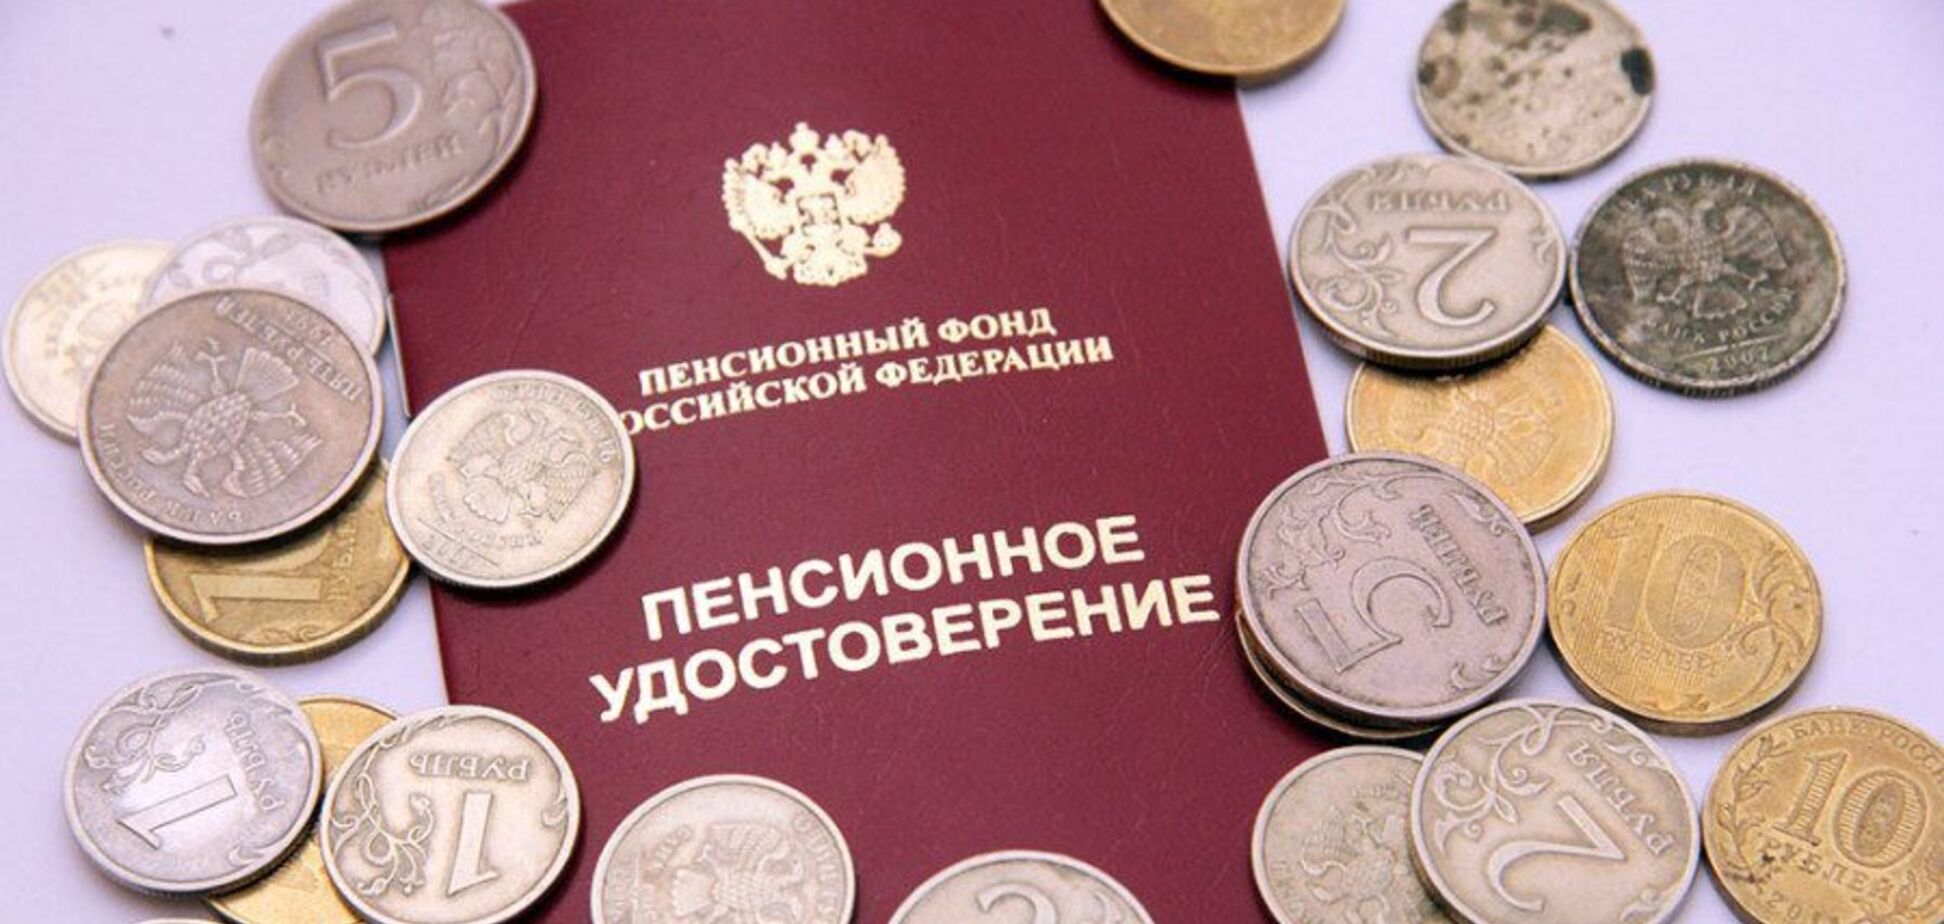 Ради пенсии: в России чиновник придумал ловкую схему обмана